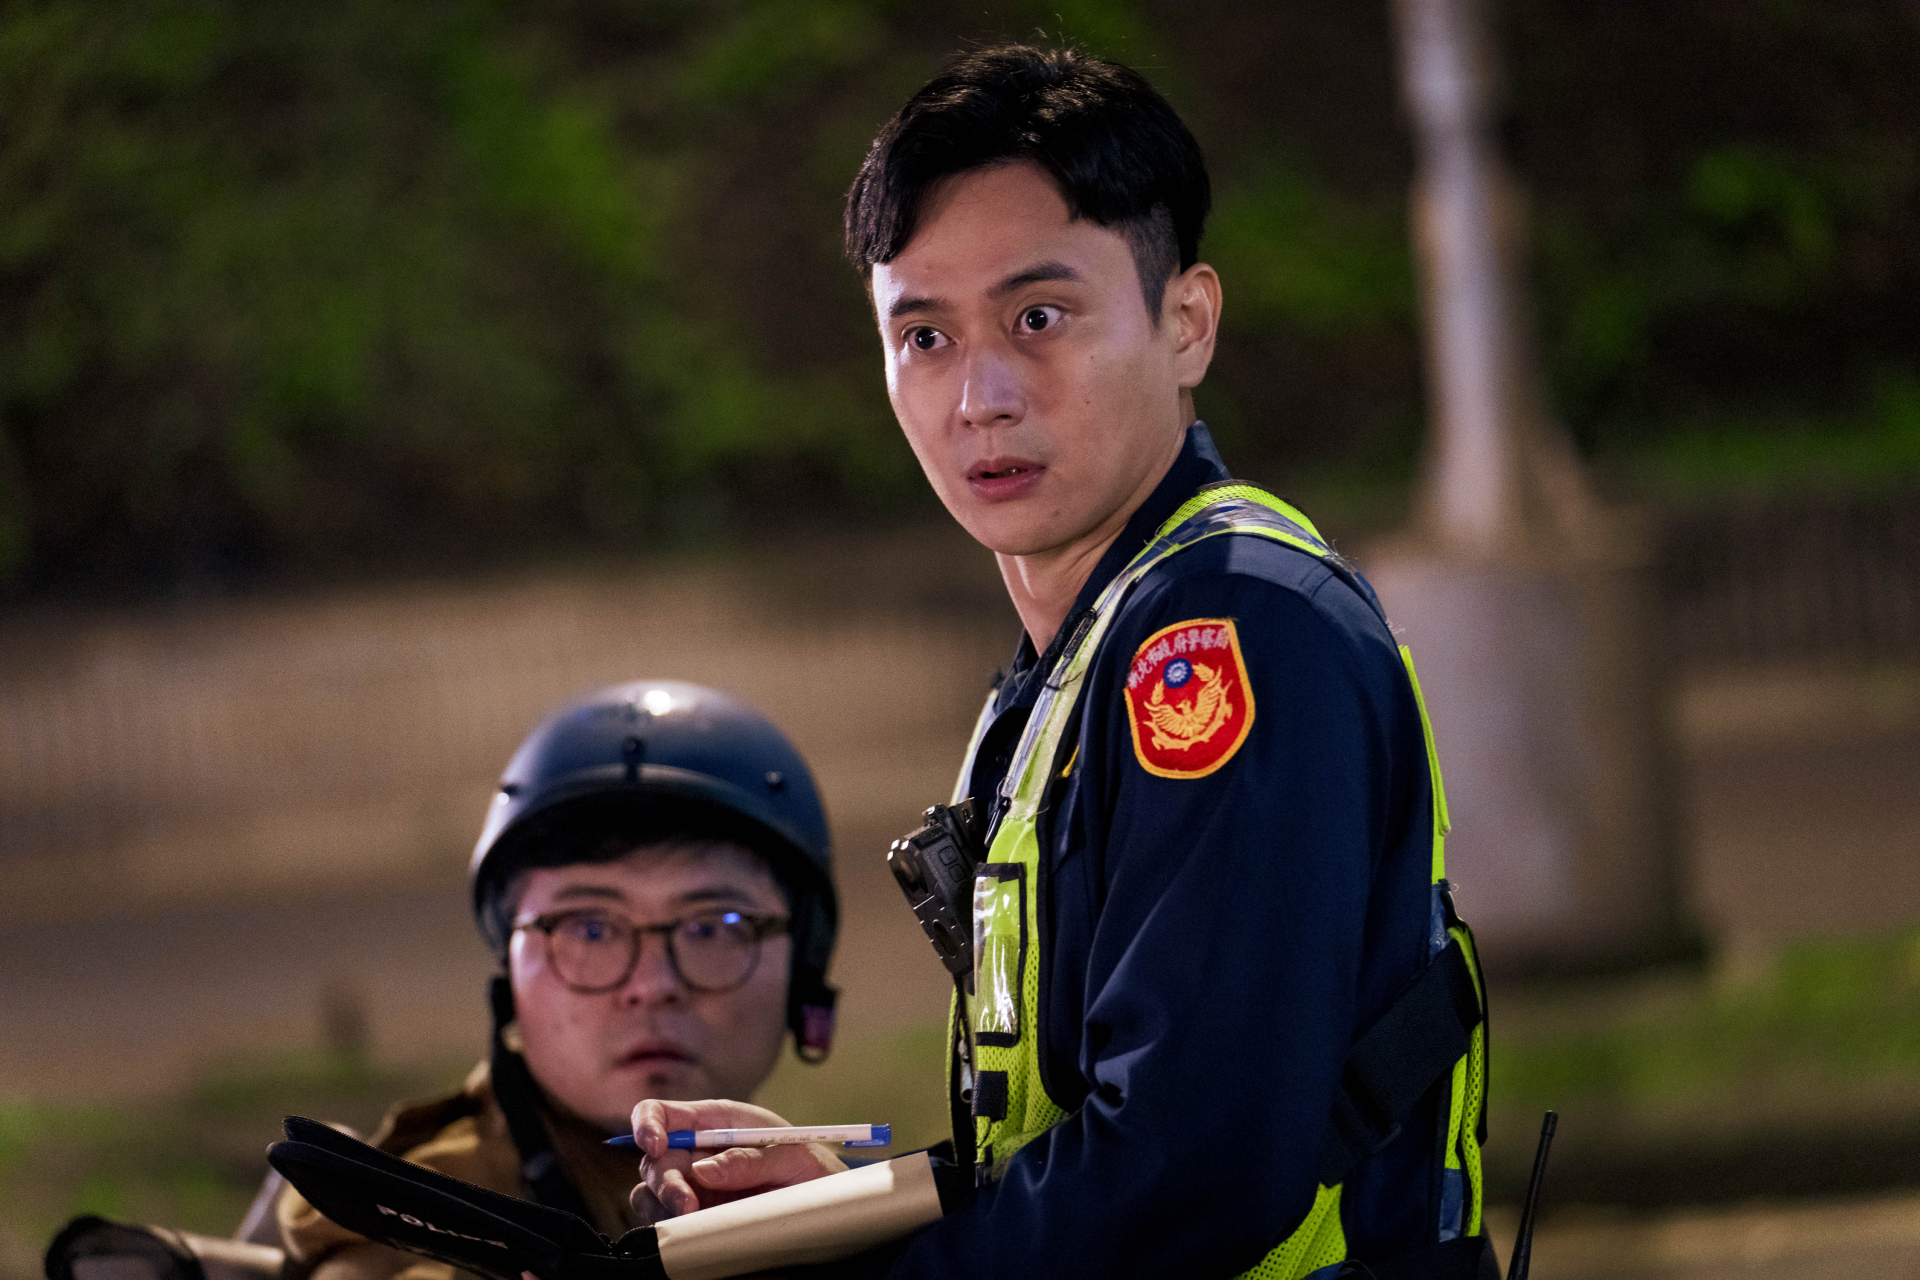 Bộ phim có 'cảnh nóng' của Hứa Quang Hán, doanh thu trăm tỷ sắp chính thức đổ bộ Netflix - ảnh 6